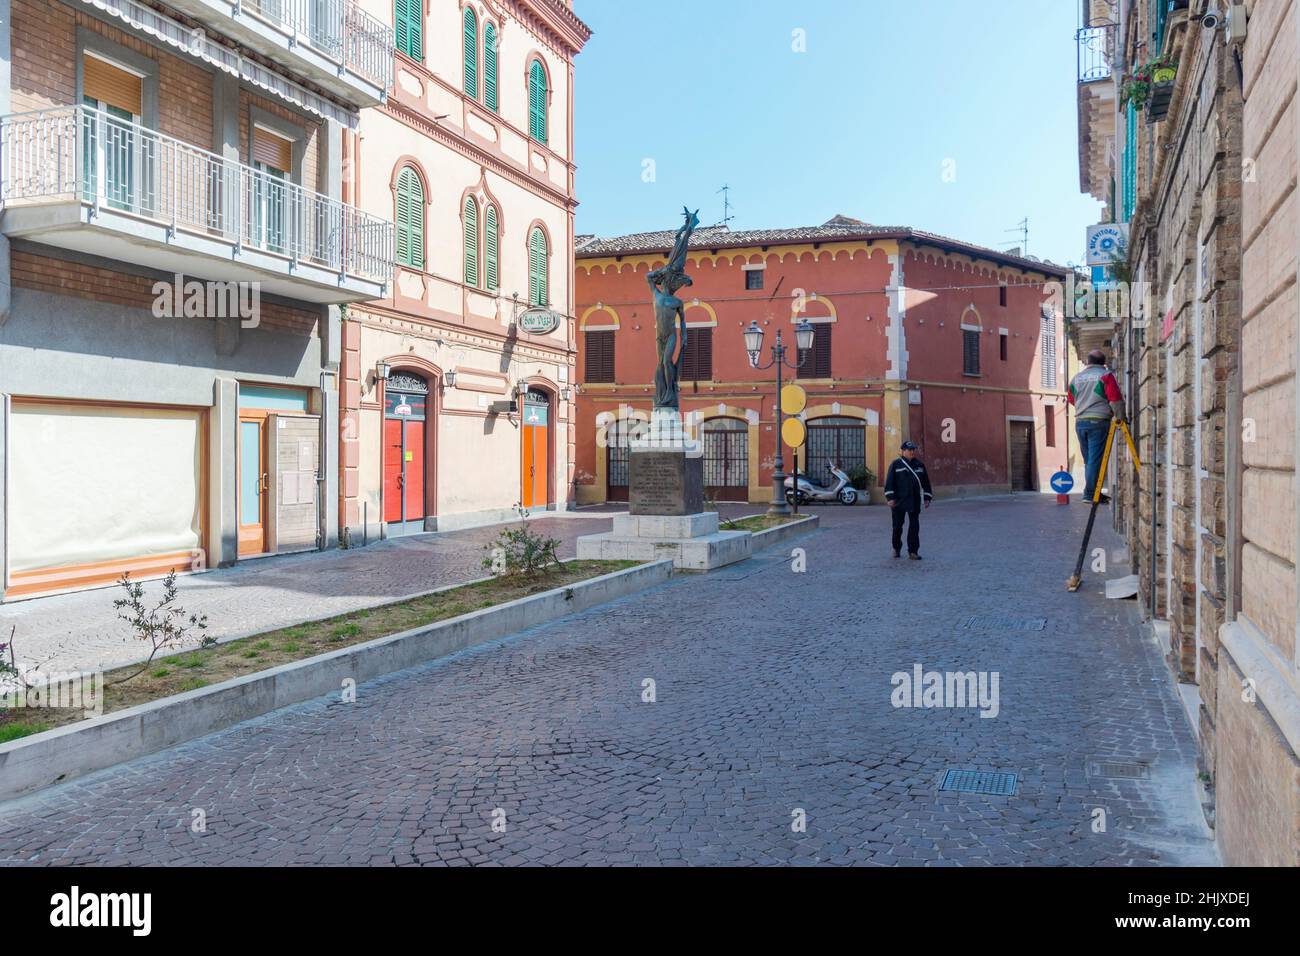 Centro storico, Piazza Francesco Martella, Atri, Abruzzo, Italia, Europa  Foto stock - Alamy